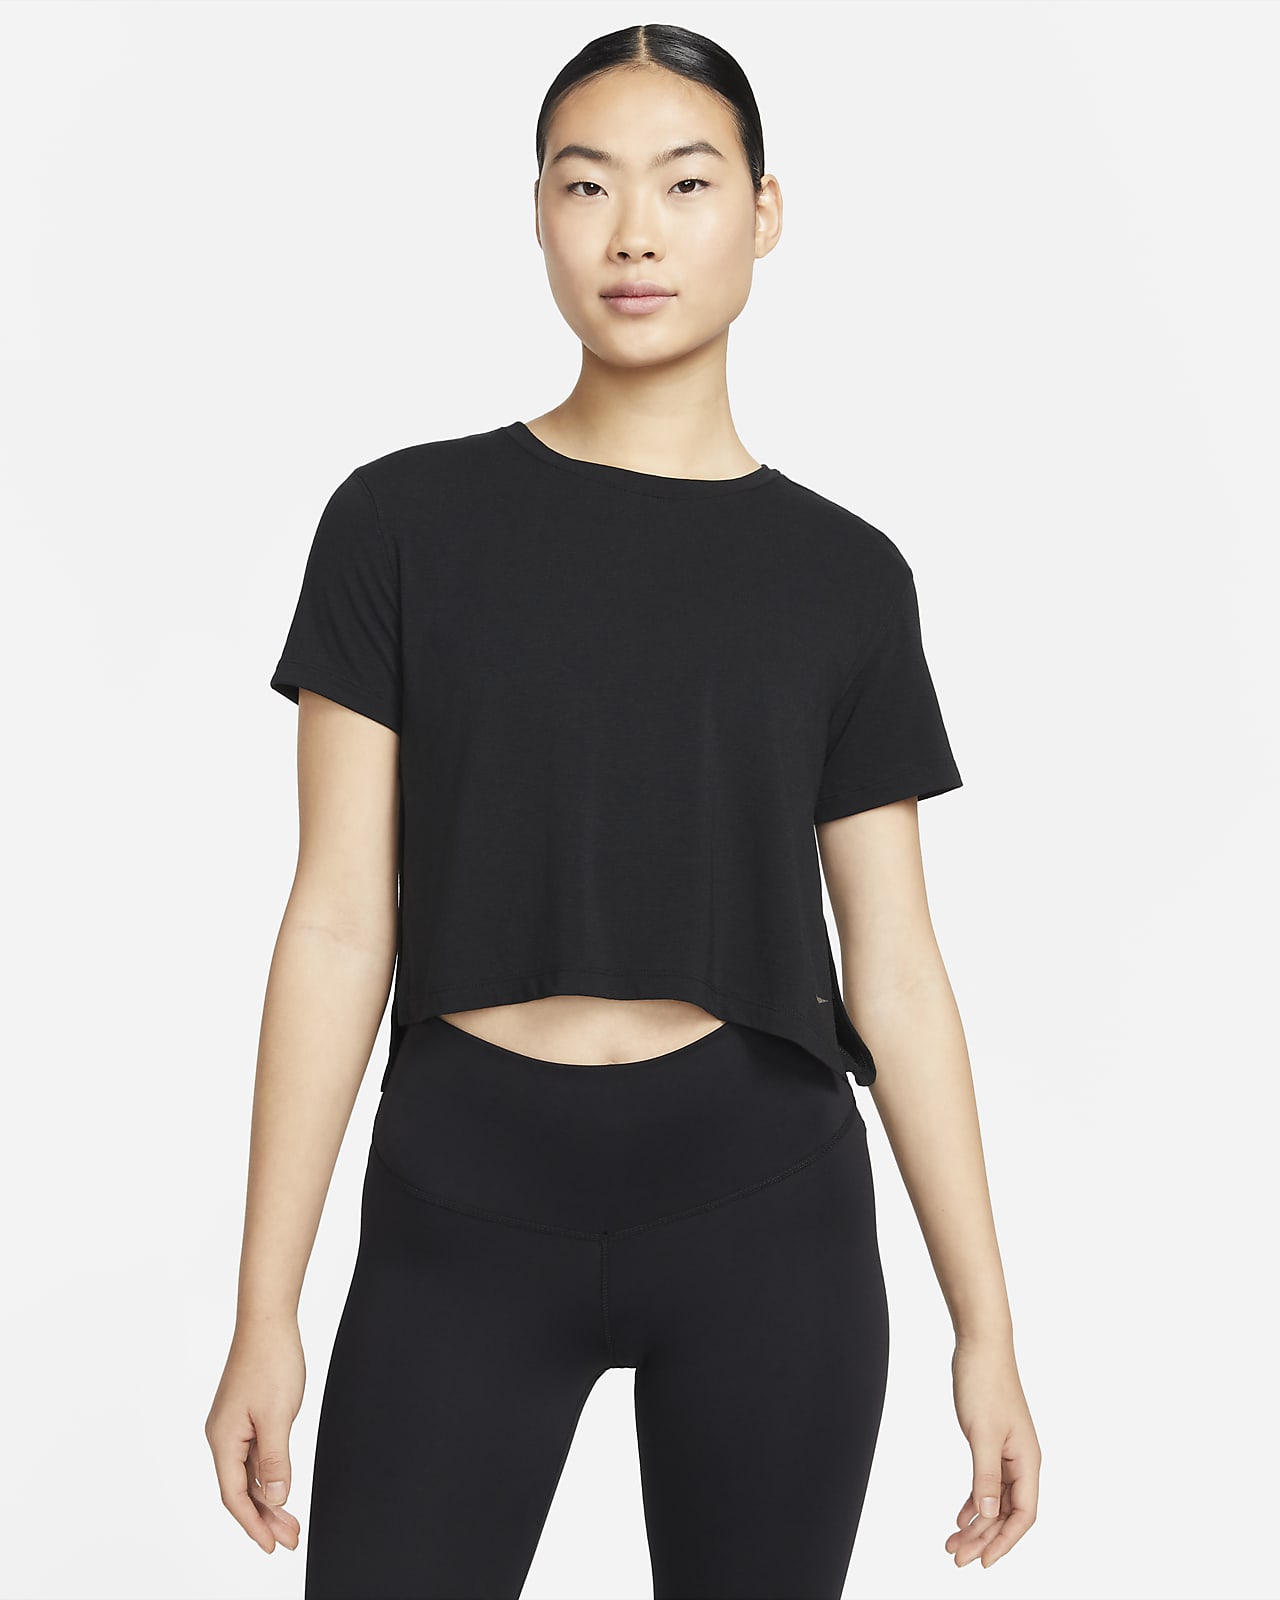 เสื้อผู้หญิง Nike Yoga Dri-FIT